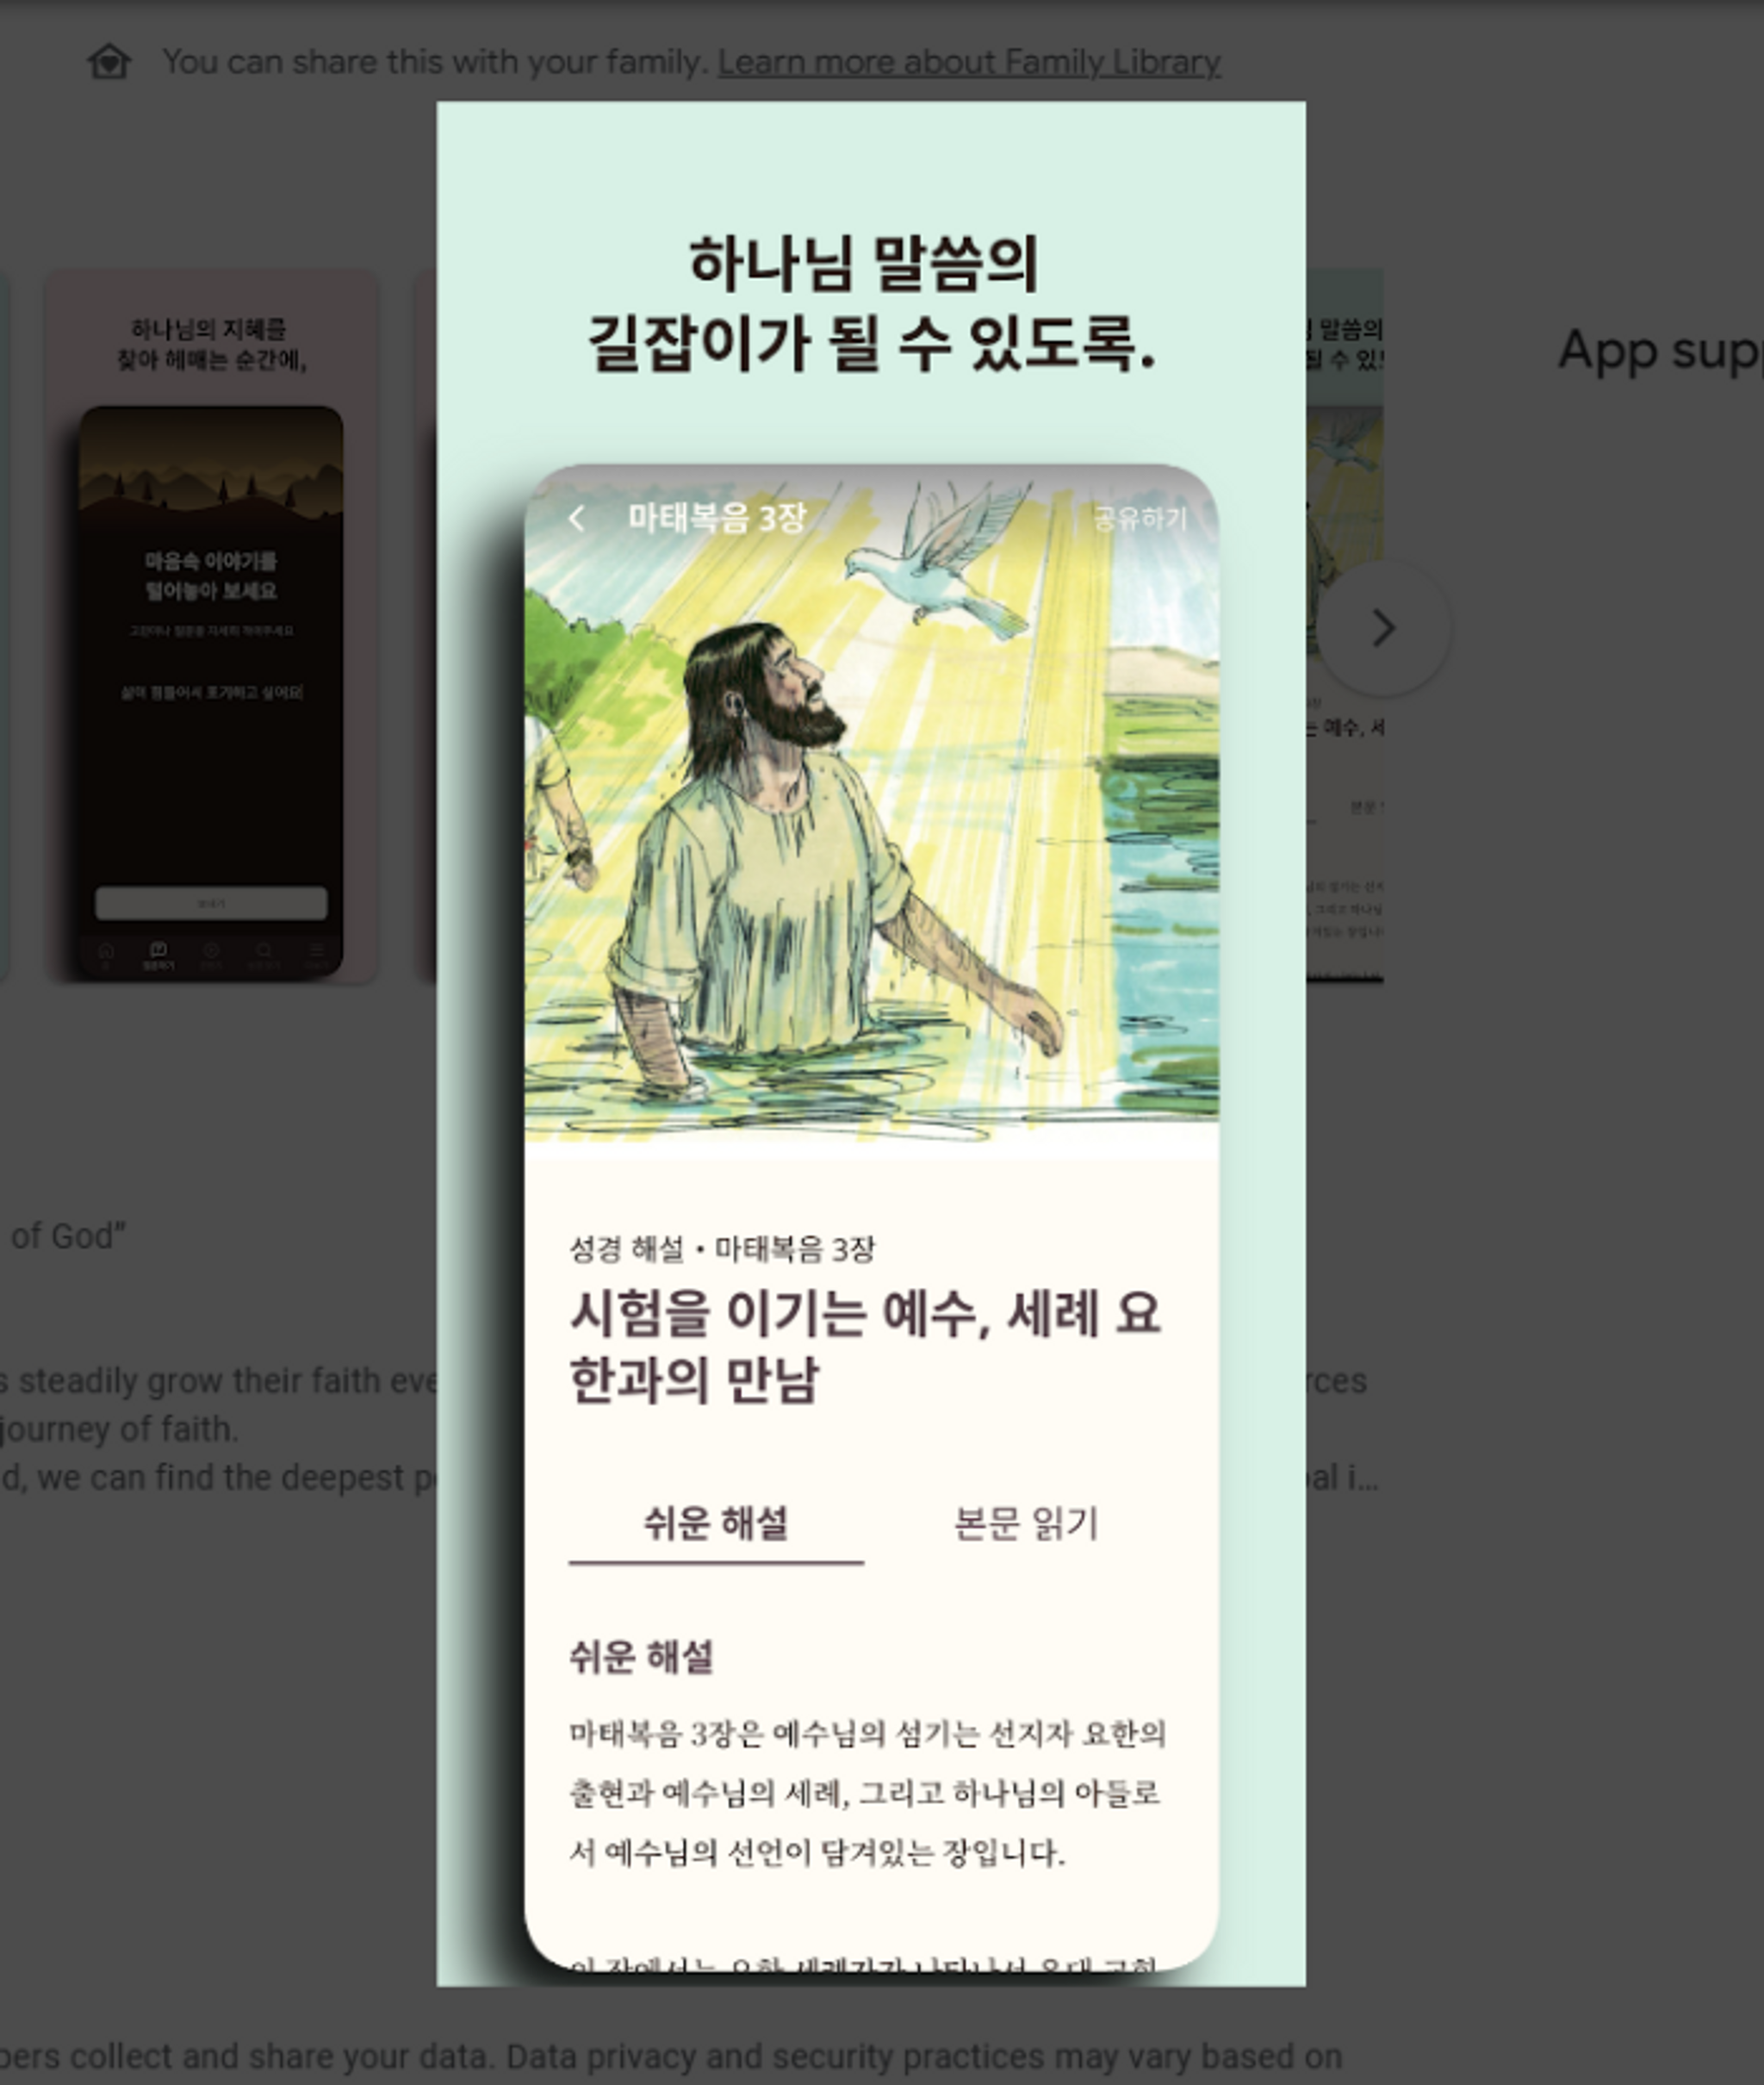 AI 'pastors' provide guidance for Korean Christians